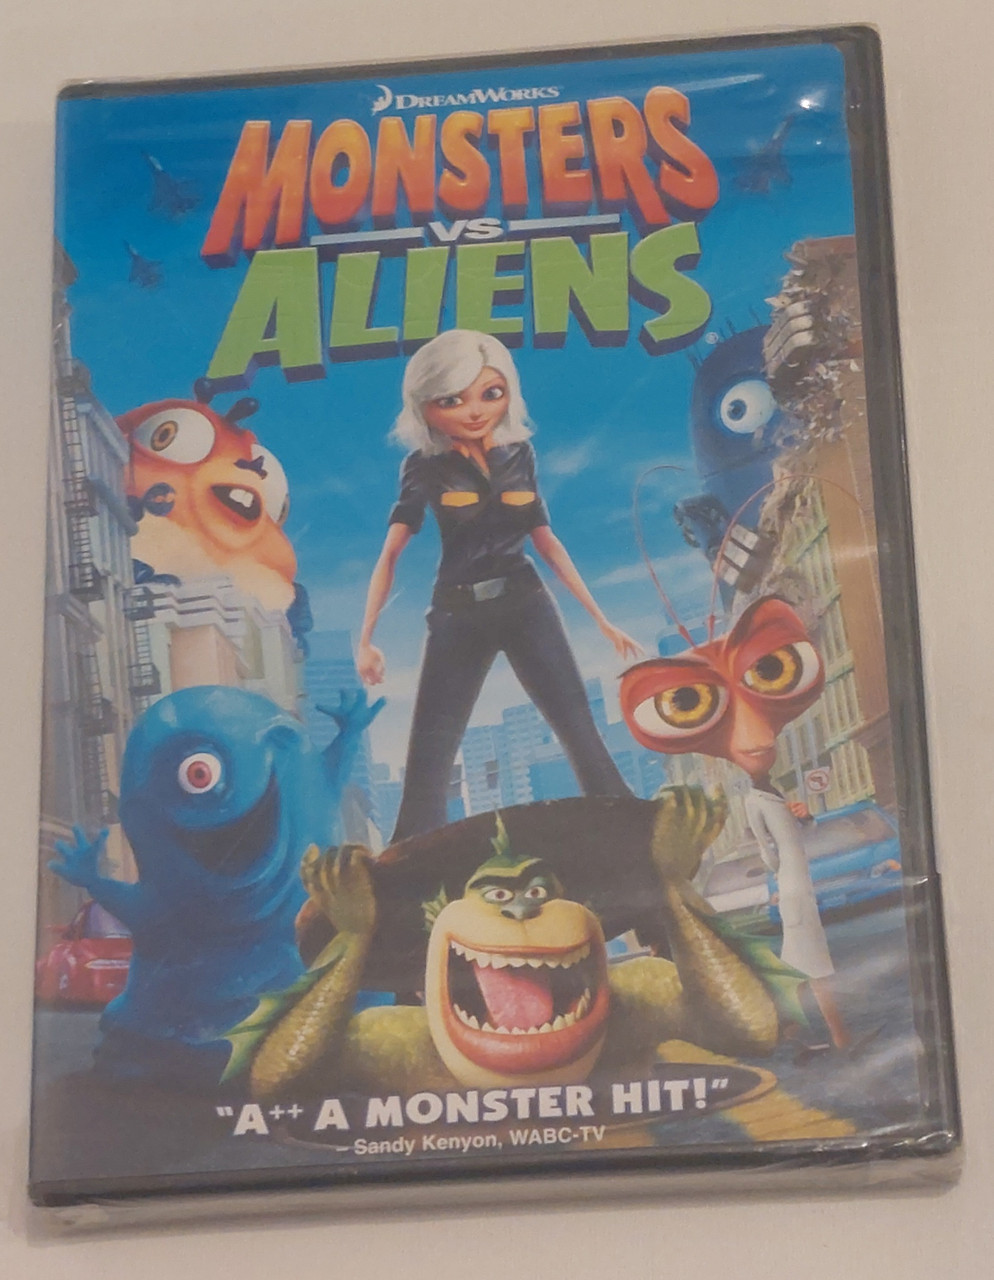 Monsters vs. Aliens [DVD]